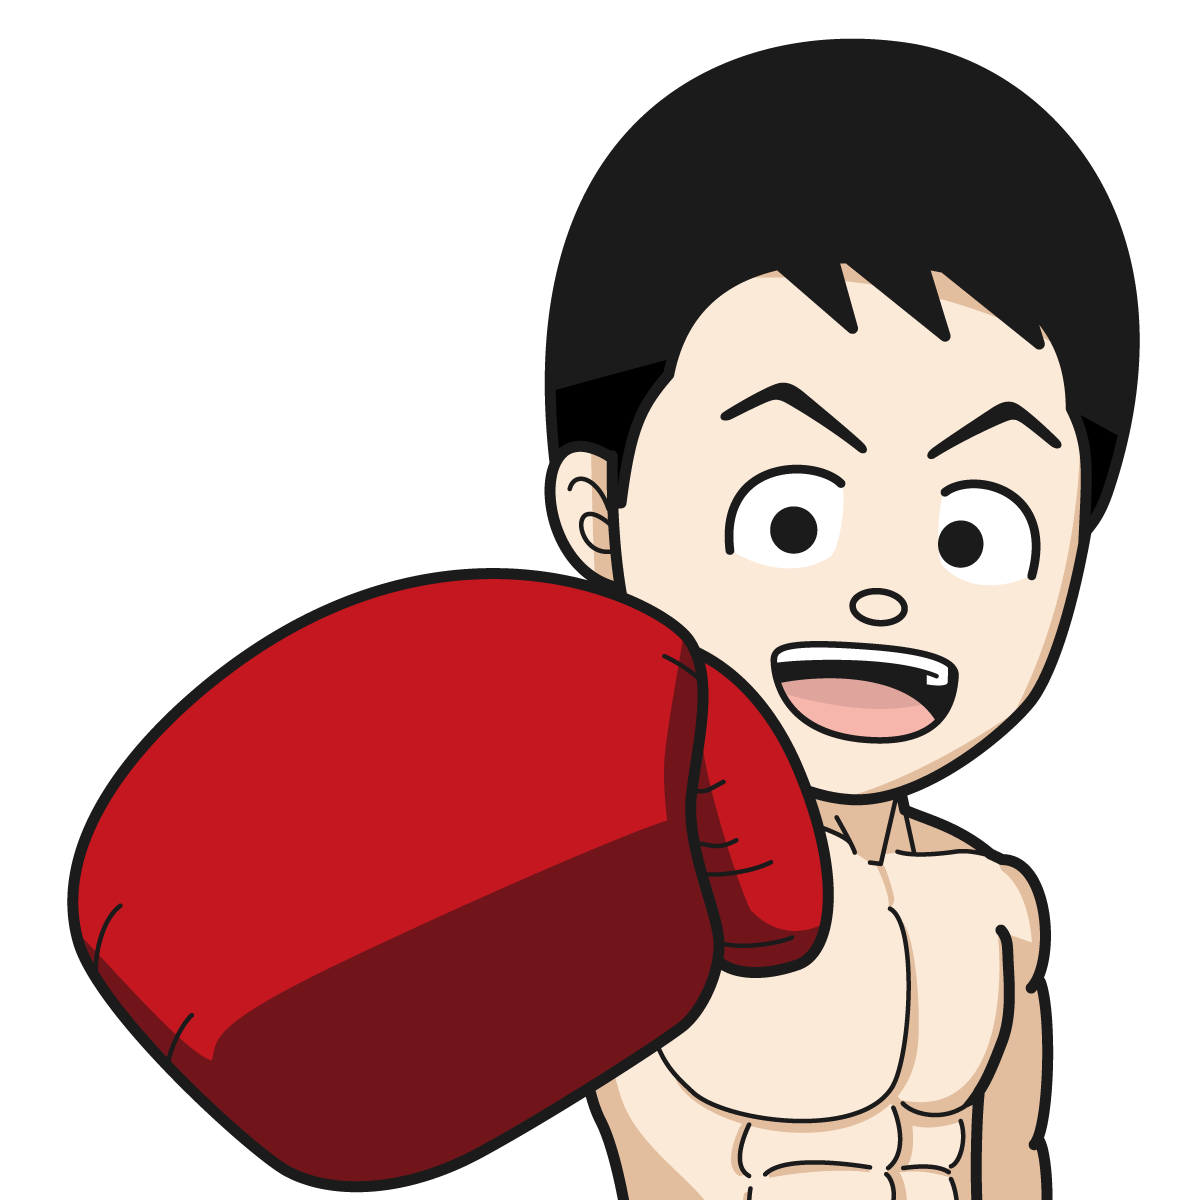 ボクシングをするマッチョな裸姿の男性61 Item イラスト Mido Kichi